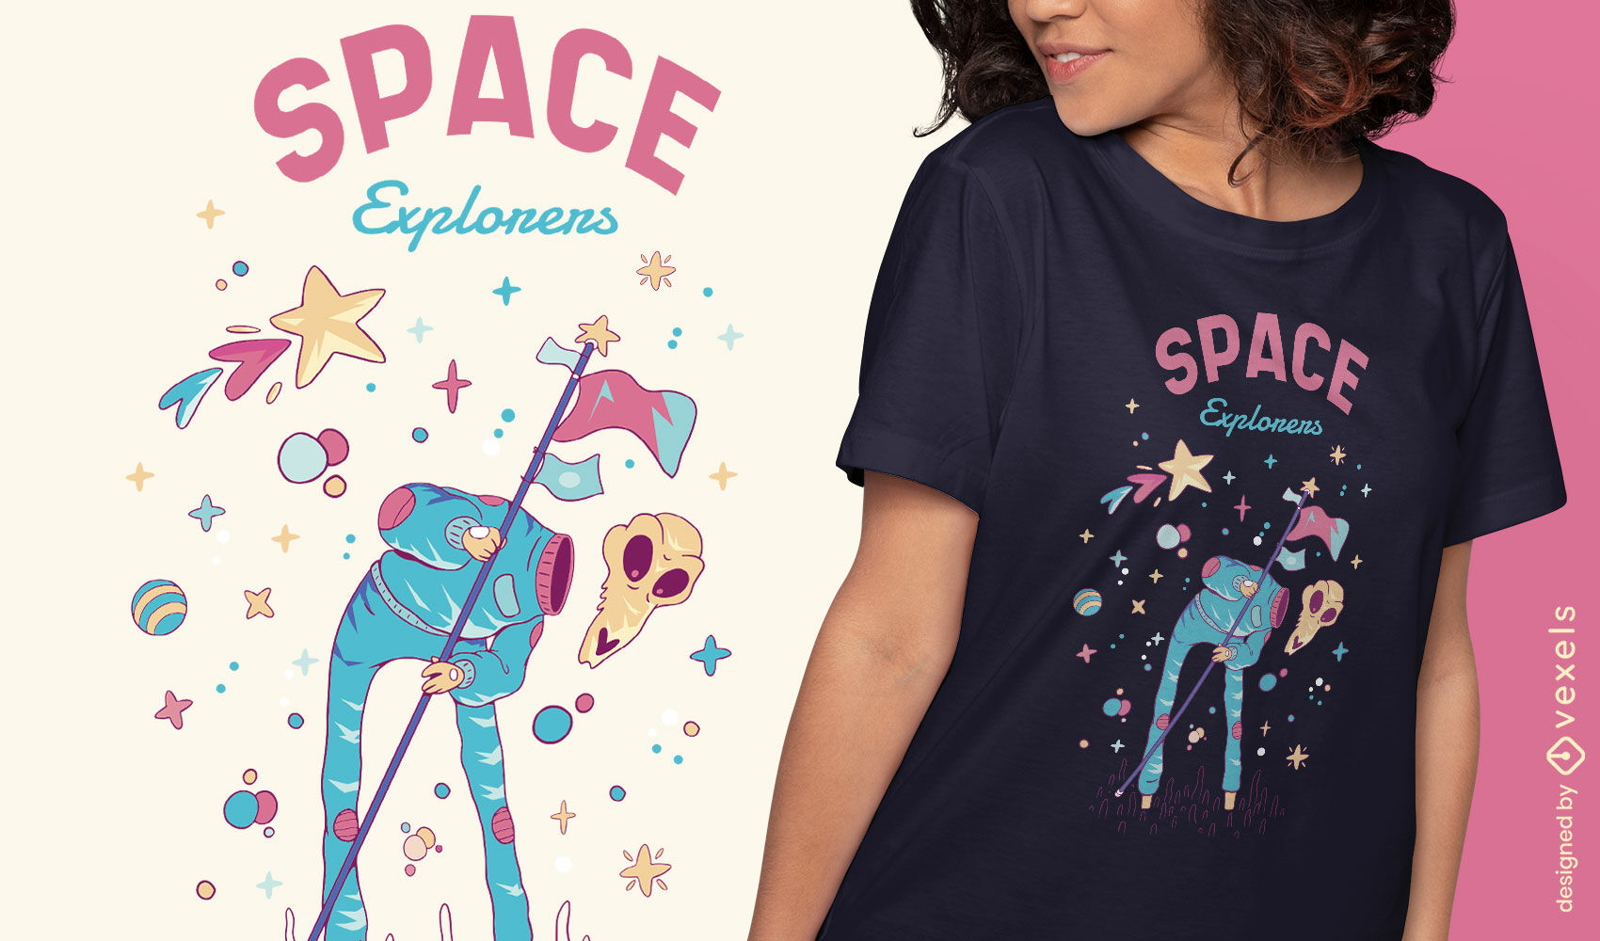 Dise?o de camiseta de explorador de astronauta espacial.